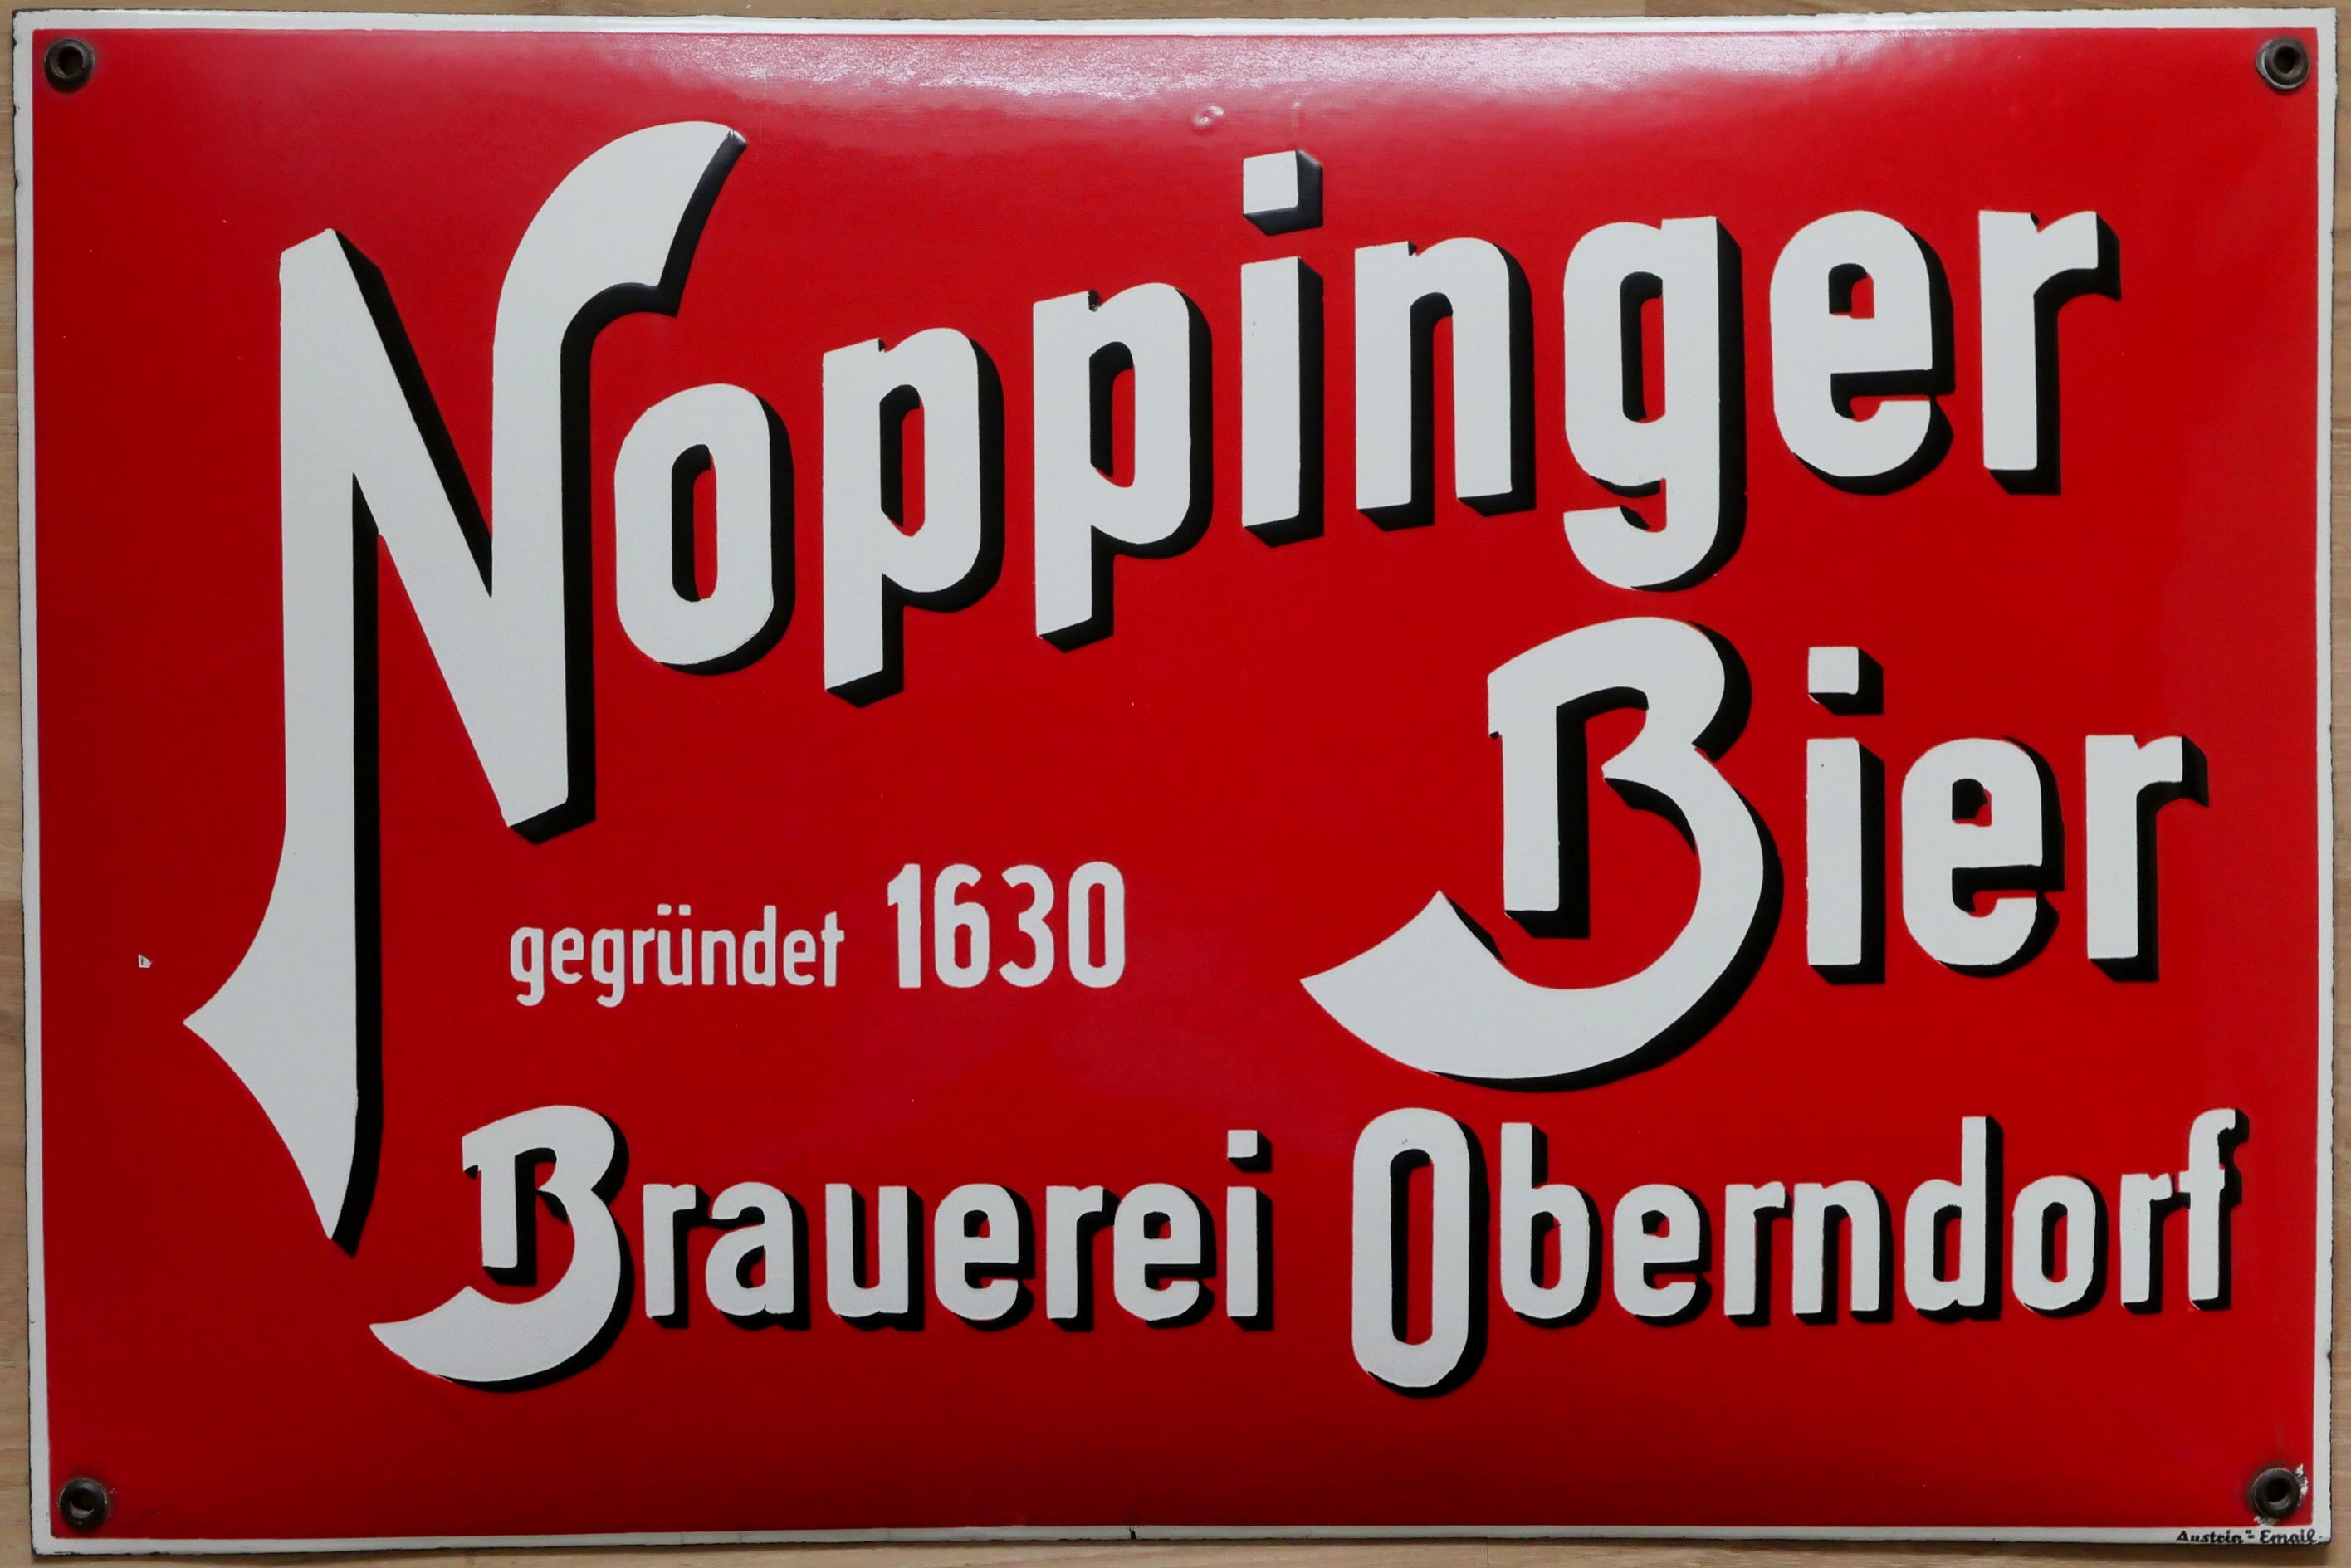 Noppinger